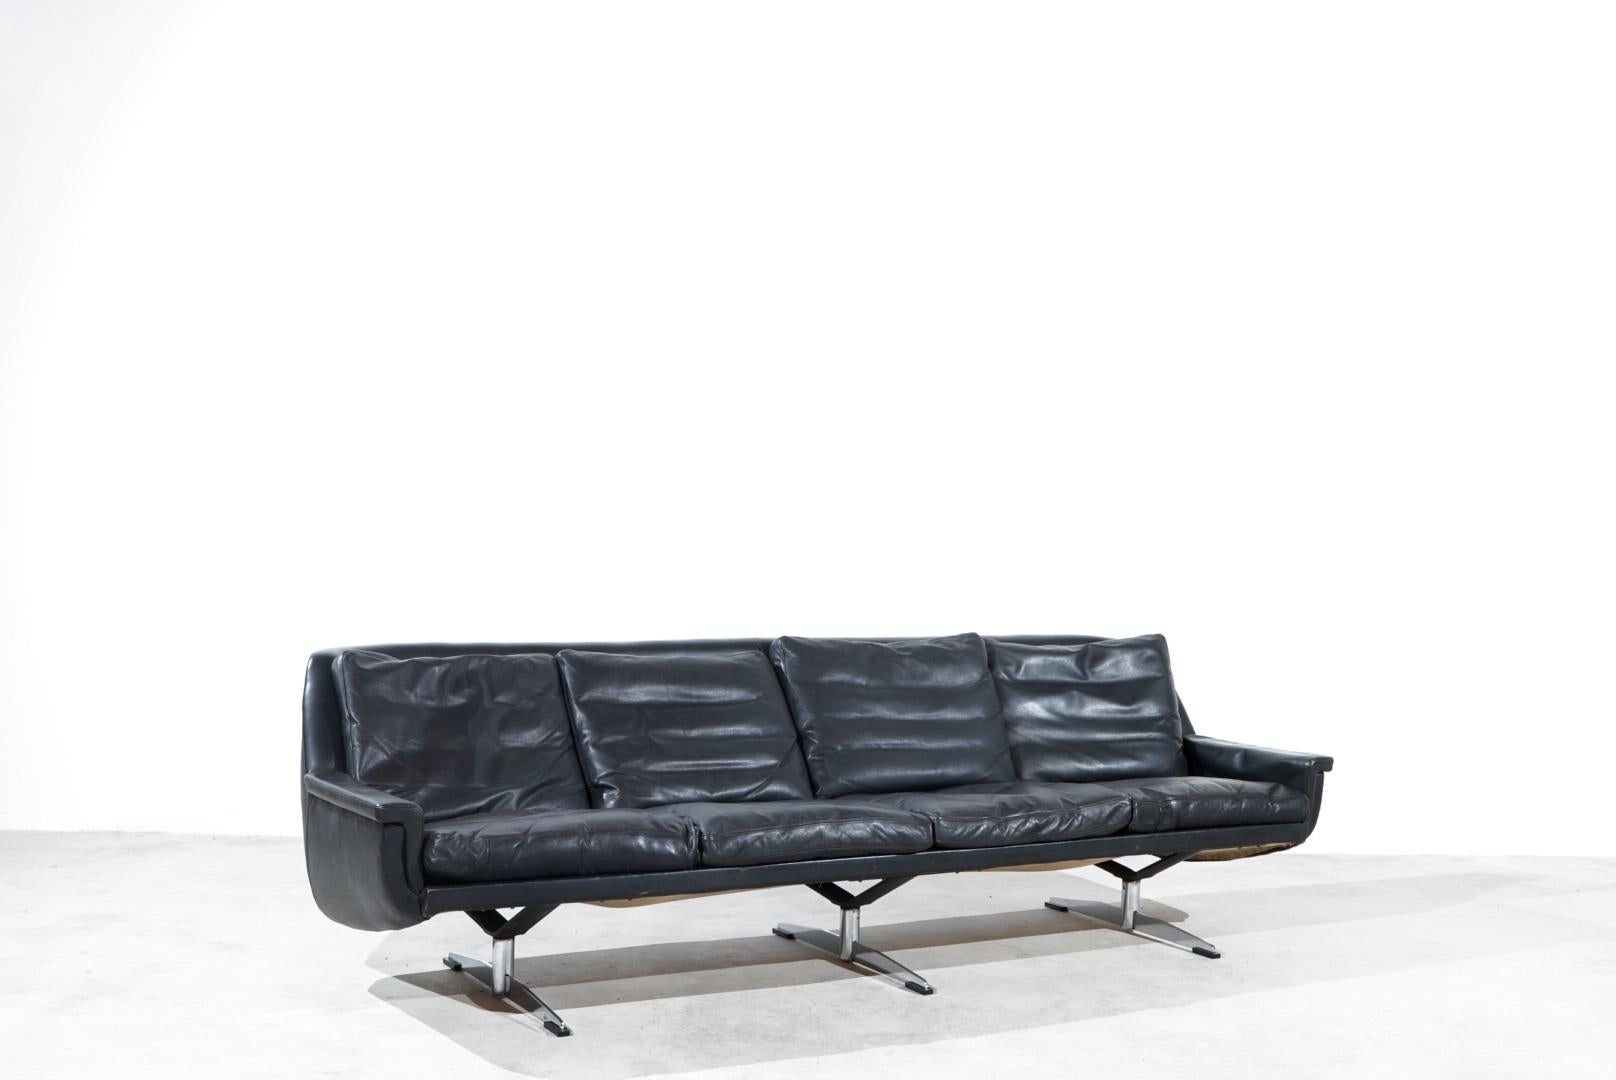 ESA Moebelwerk Dänemark Modell 802 Sofa. 

Das Design stammt von Werner Langenfeld aus den 1960er Jahren.

Dieses Sofa wurde in Dänemark hergestellt und ist aus glattem schwarzem Anilinleder gefertigt.

Seltenes Modell mit einzigartigem, schwerem